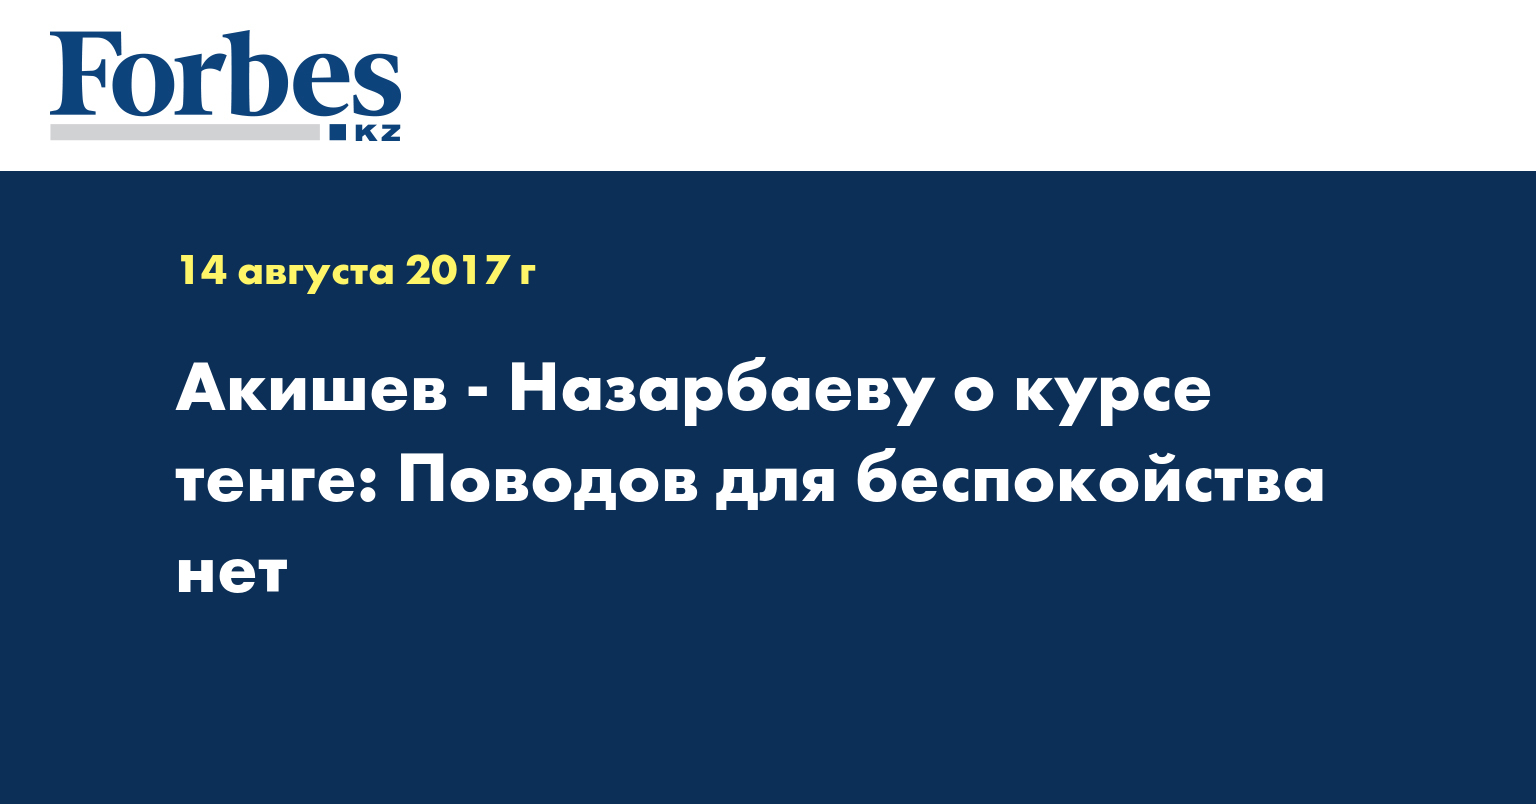 Акишев - Назарбаеву о курсе тенге: Поводов для беспокойства нет